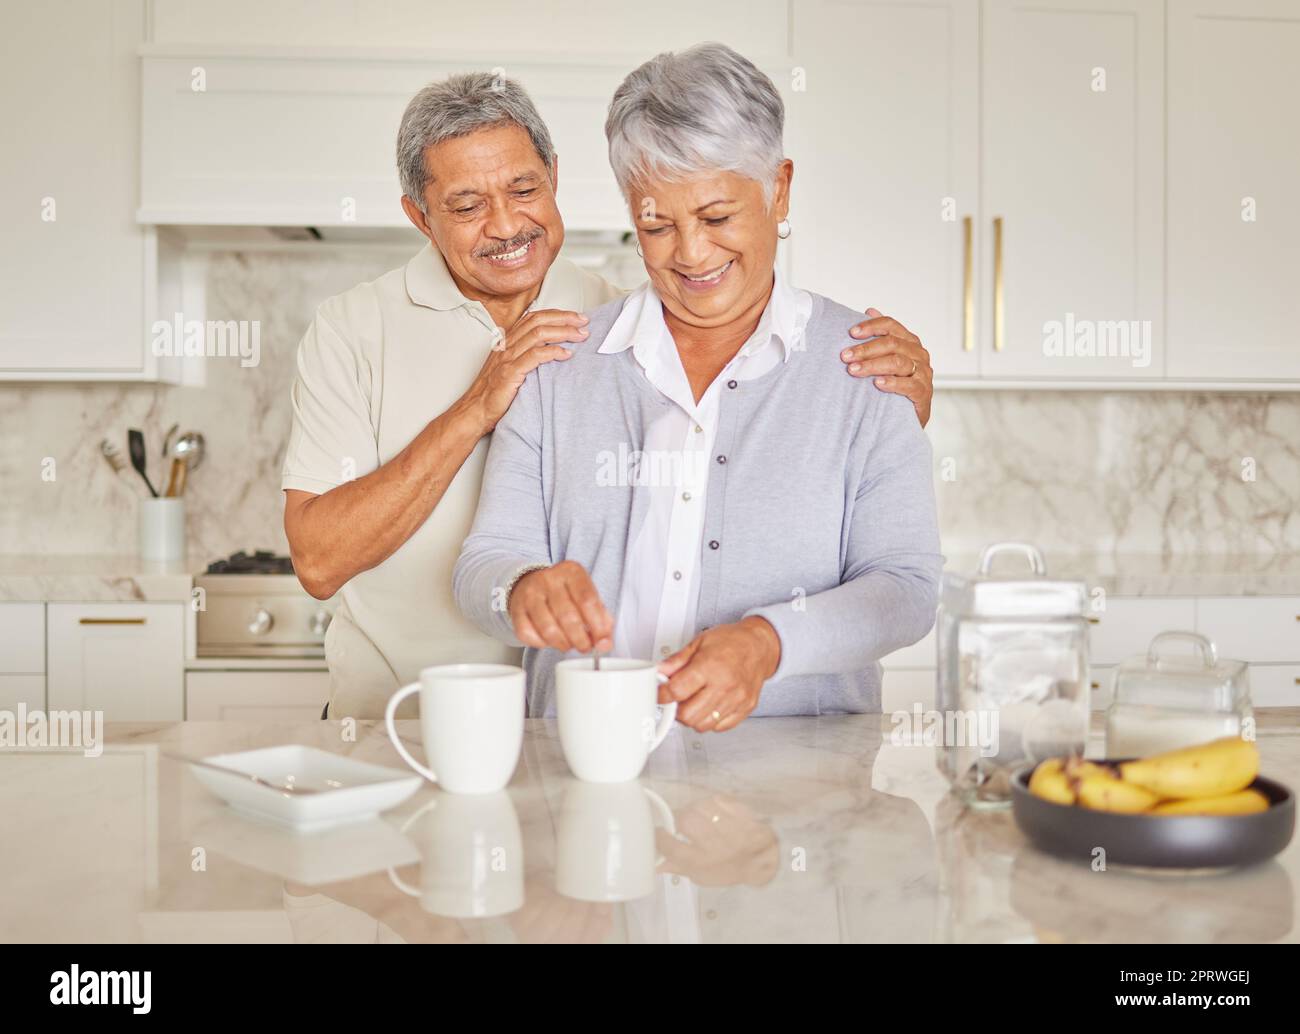 Le café, le couple et l'amour avec une femme et un homme âgés qui profitent de la retraite pendant qu'ils sont ensemble dans la cuisine de leur maison. Heureux, sourire et romance avec un homme et une femme retraités âgés qui font du thé Banque D'Images